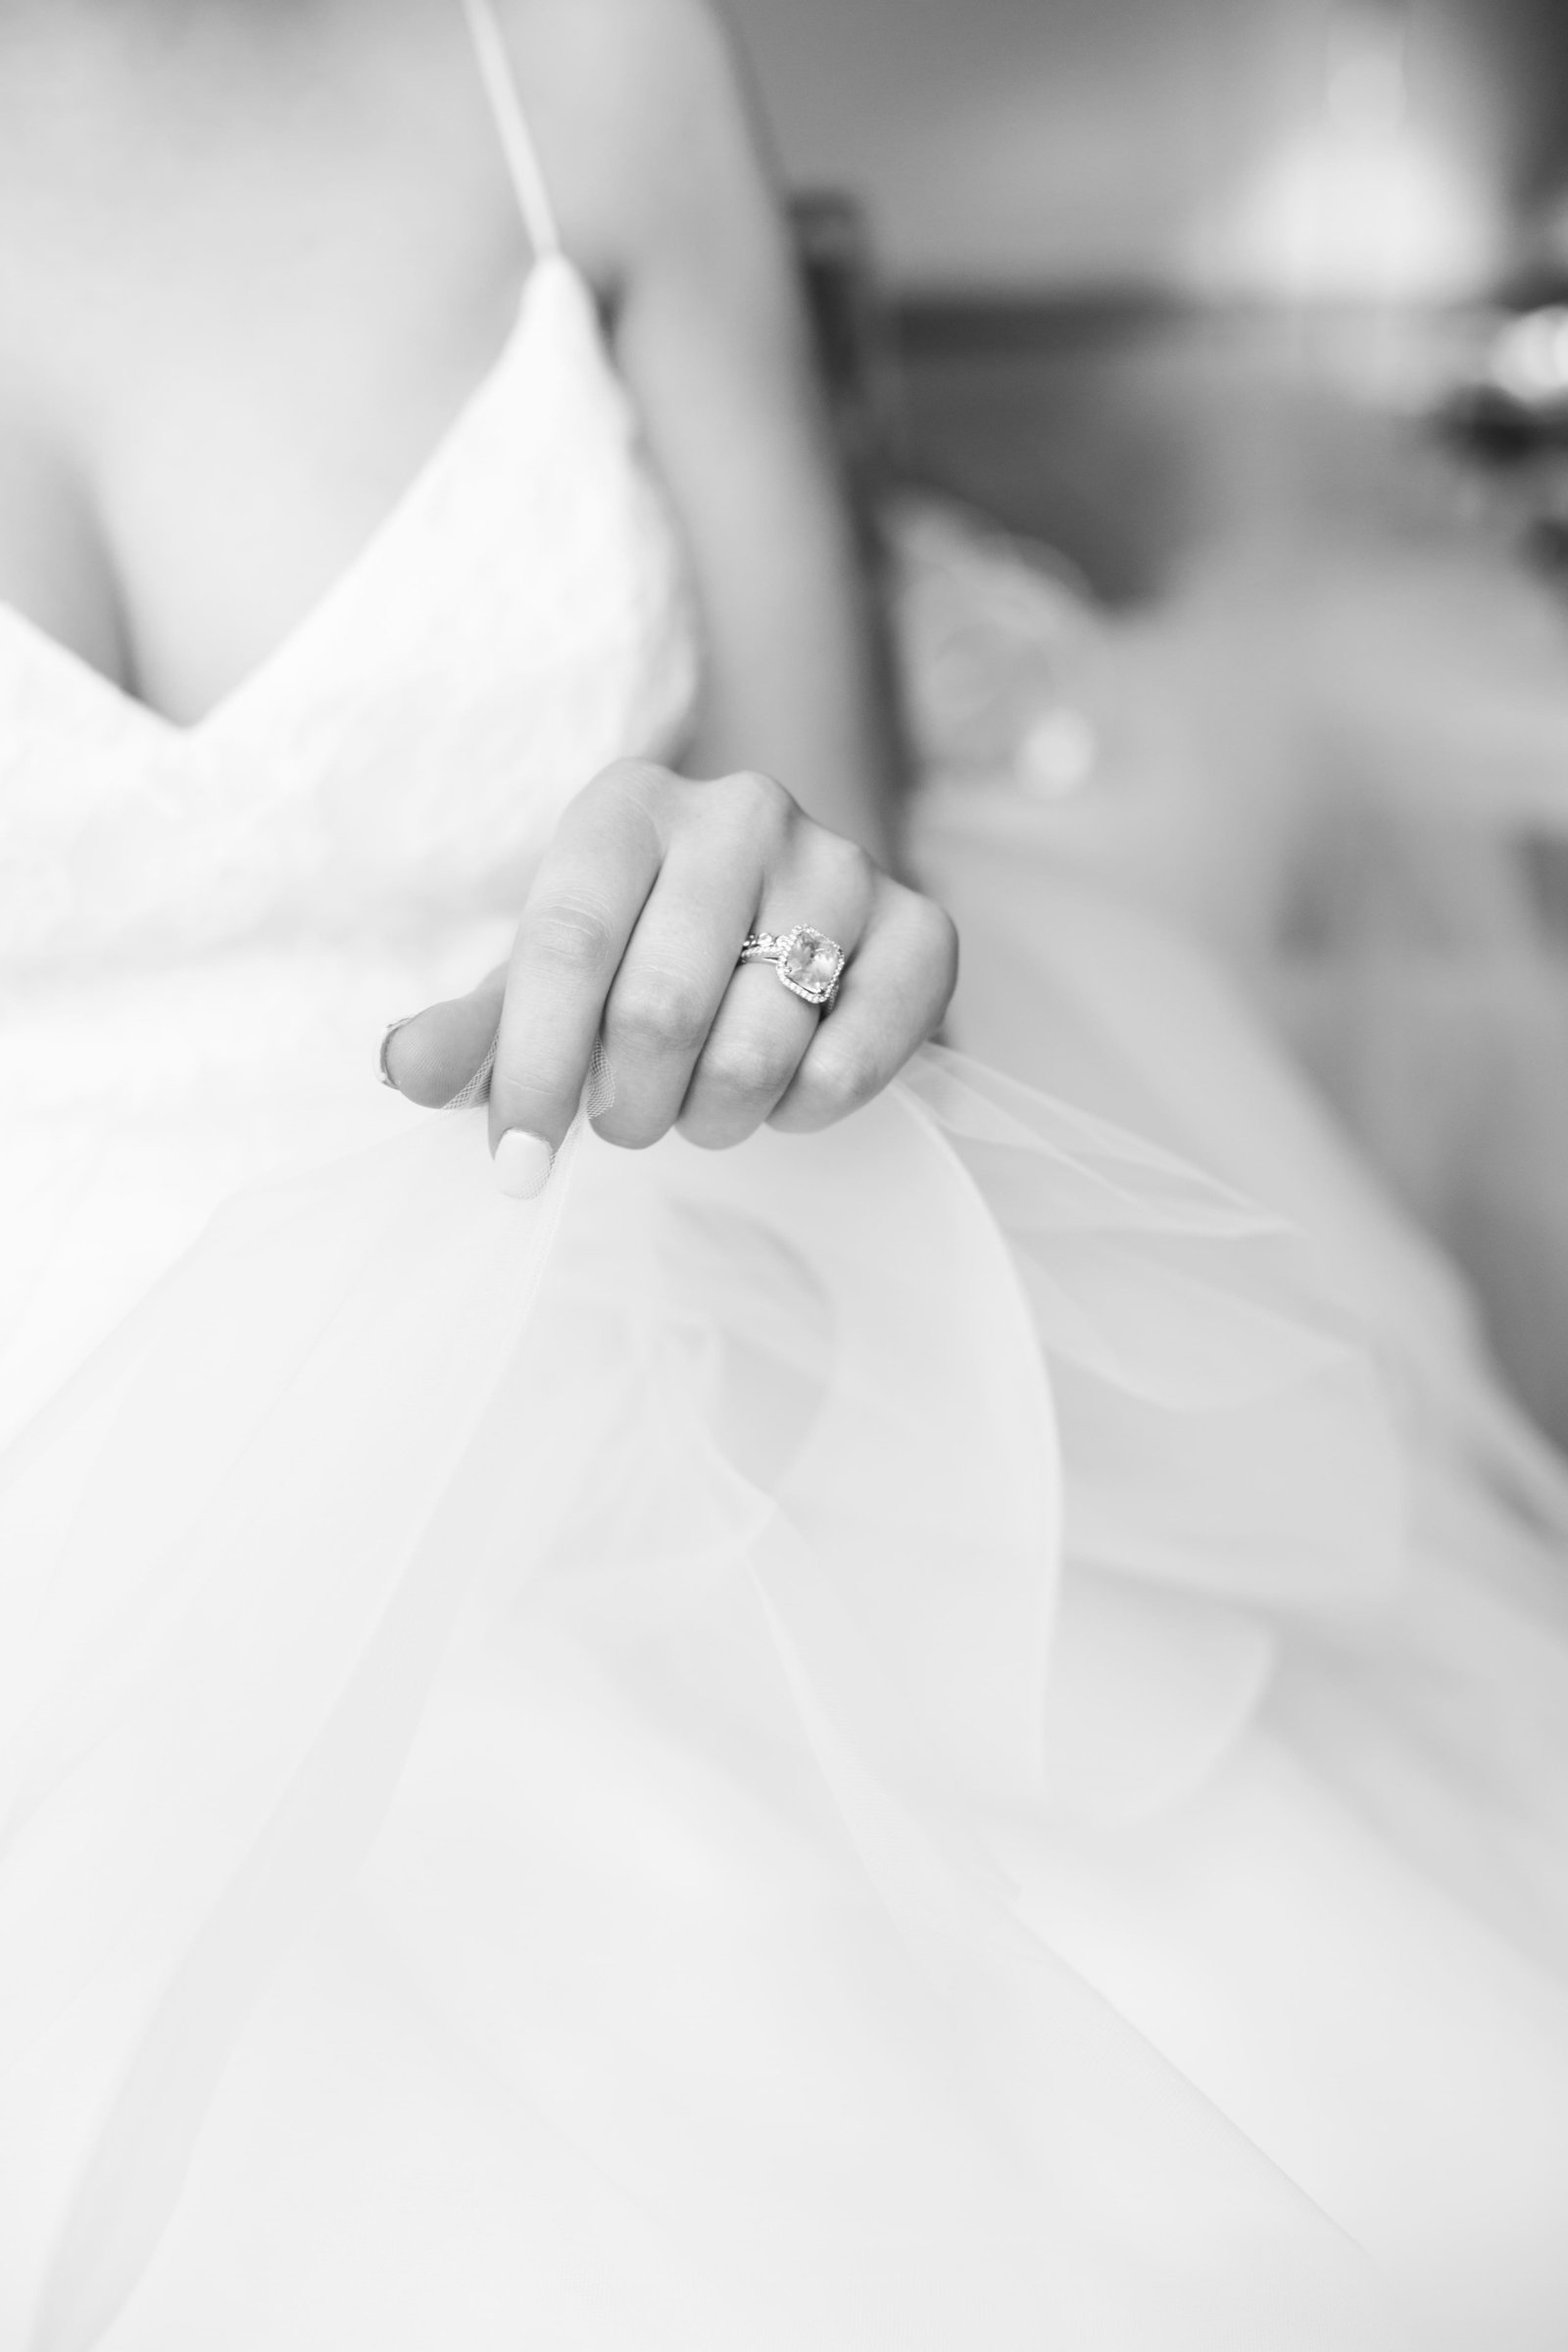 Elegant bride in tulle ballgown wedding dress